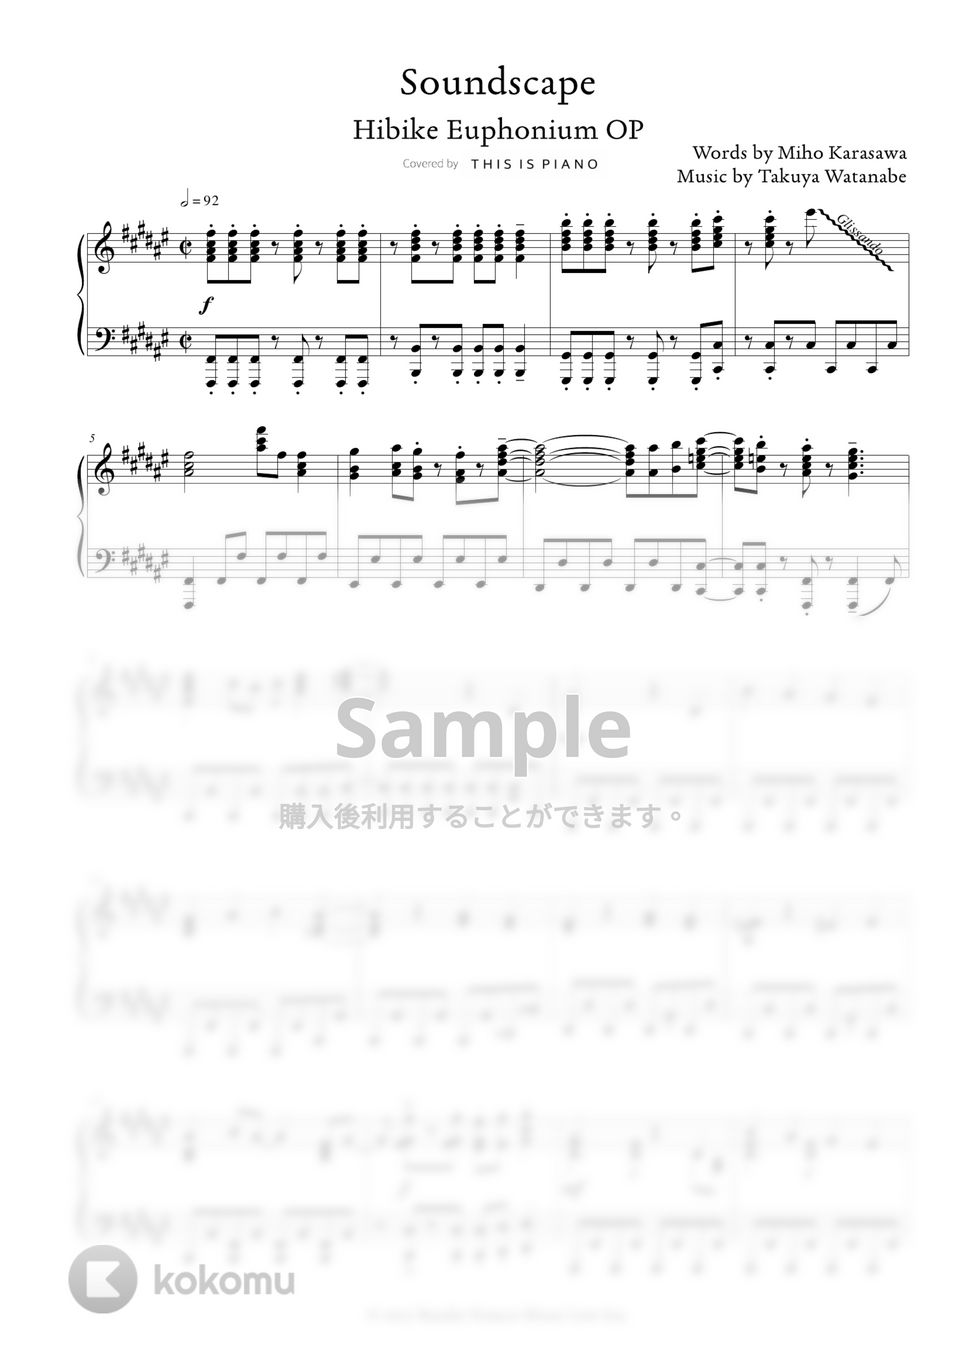 響け！ユーフォニアム - サウンドスケープ (Soundscape) by THIS IS PIANO